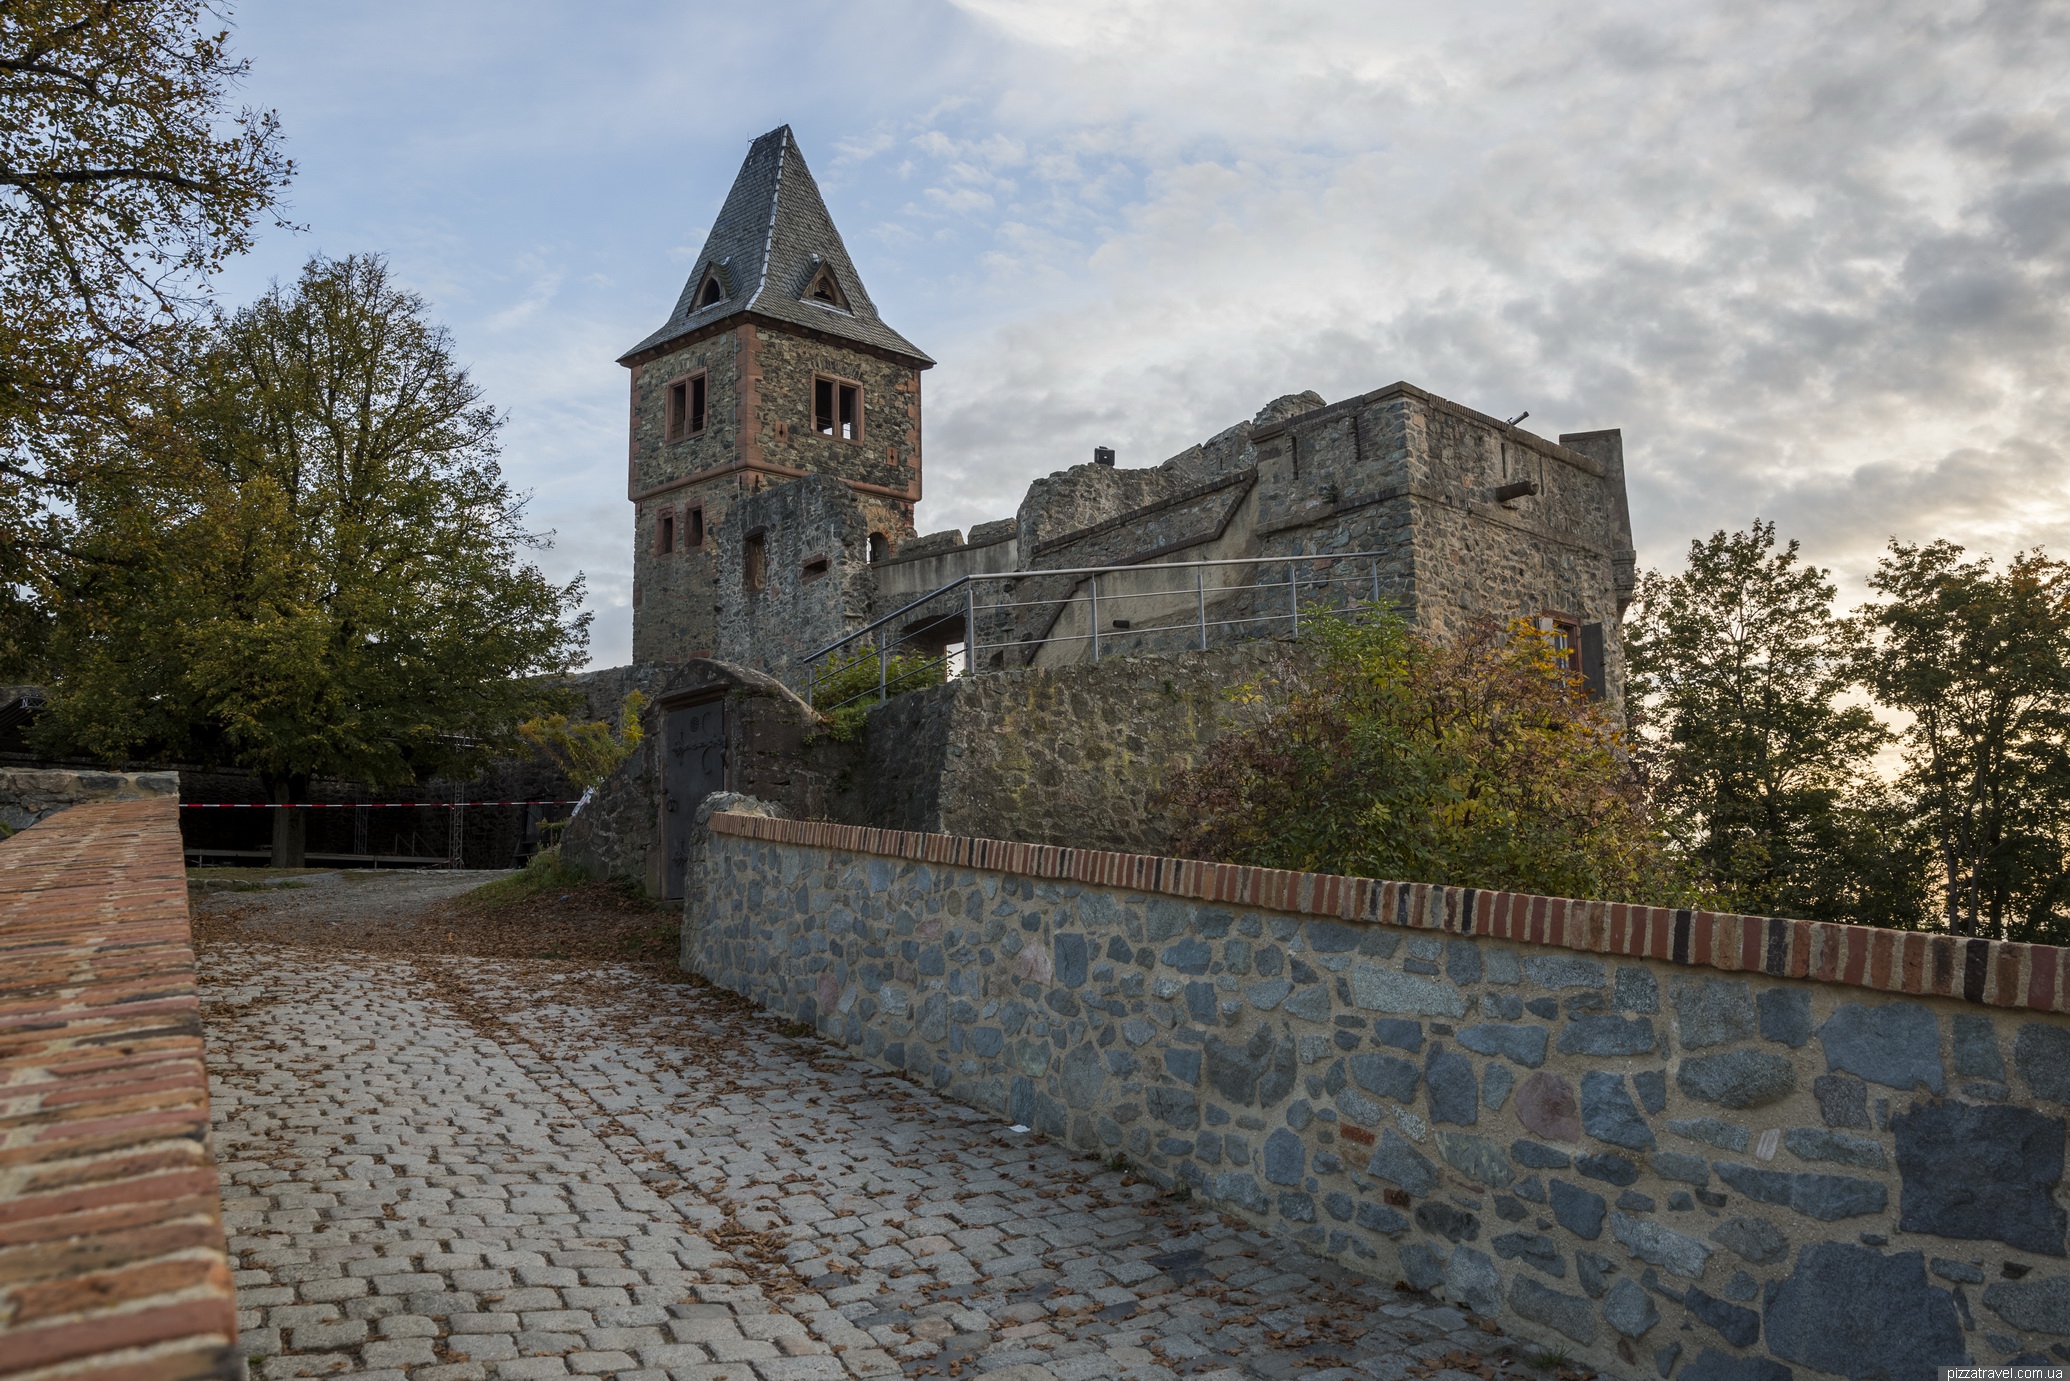 Интересные факты о замке нойшванштайн. самый прекрасный замок мира нойшванштайн возвышается на фоне головокружительных альпийских пейзажей в баварии. | интересные факты